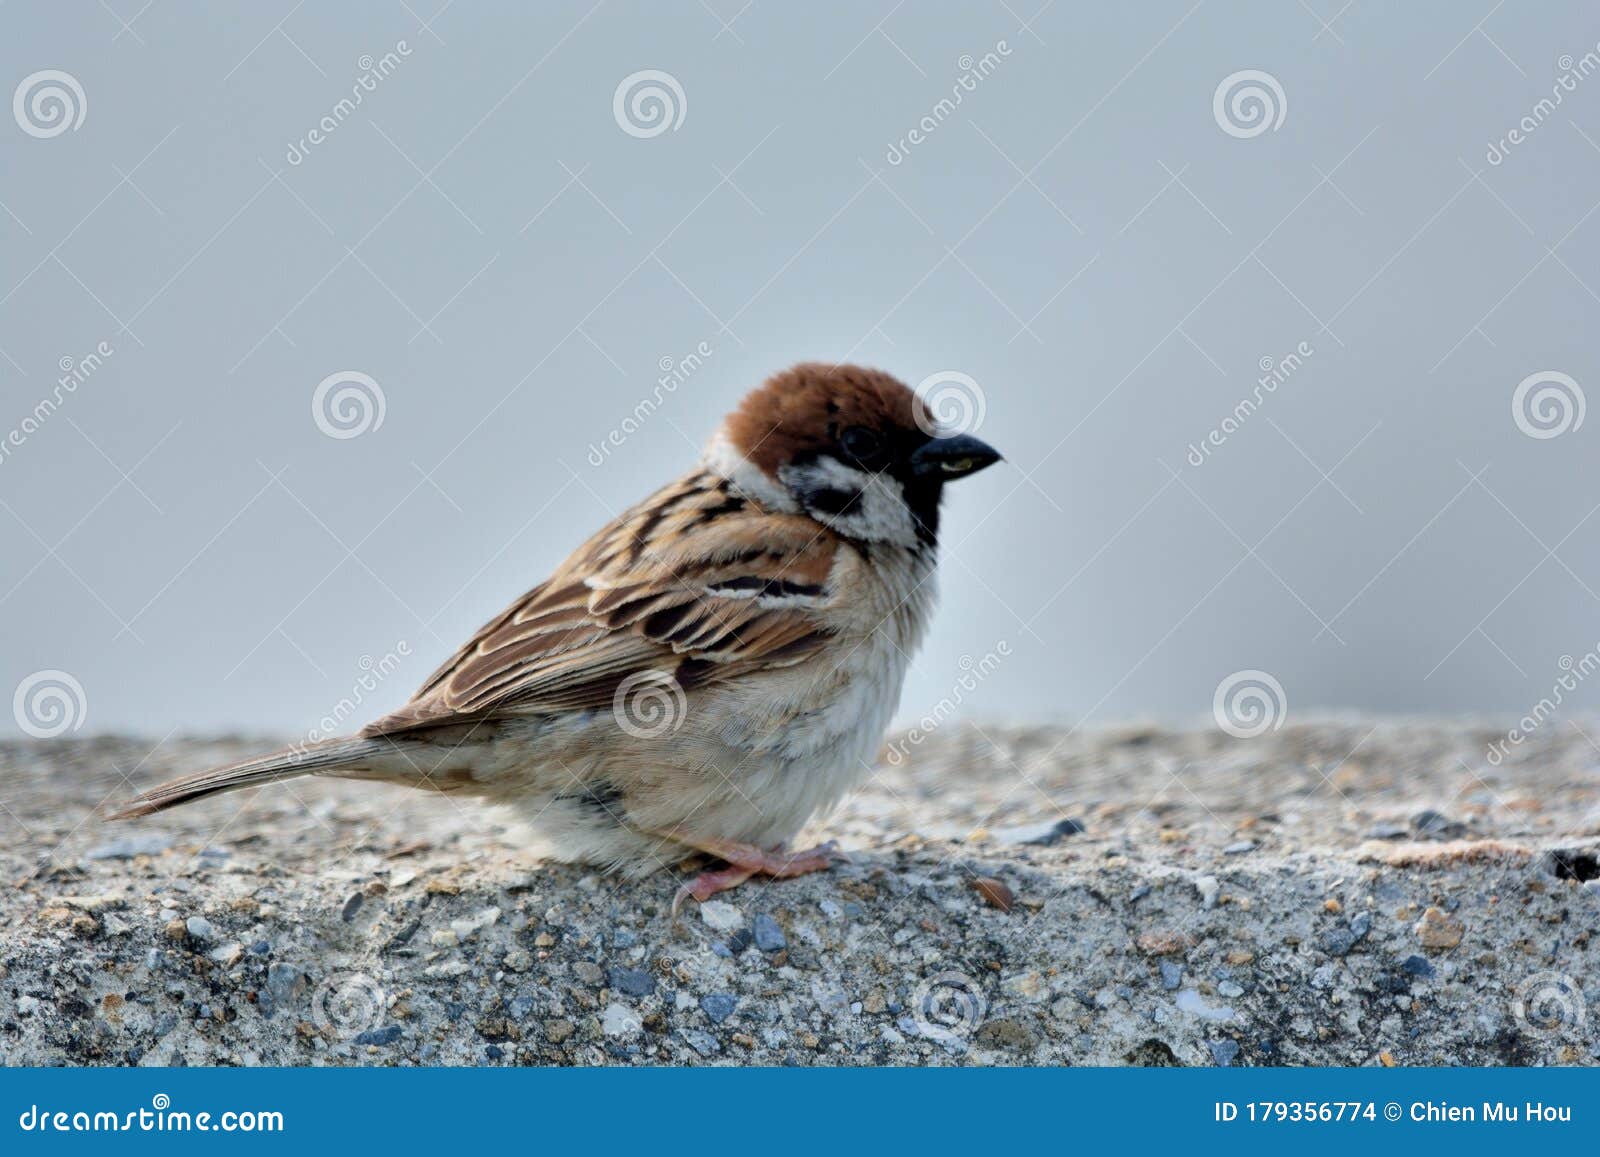 Sparrow, Chien